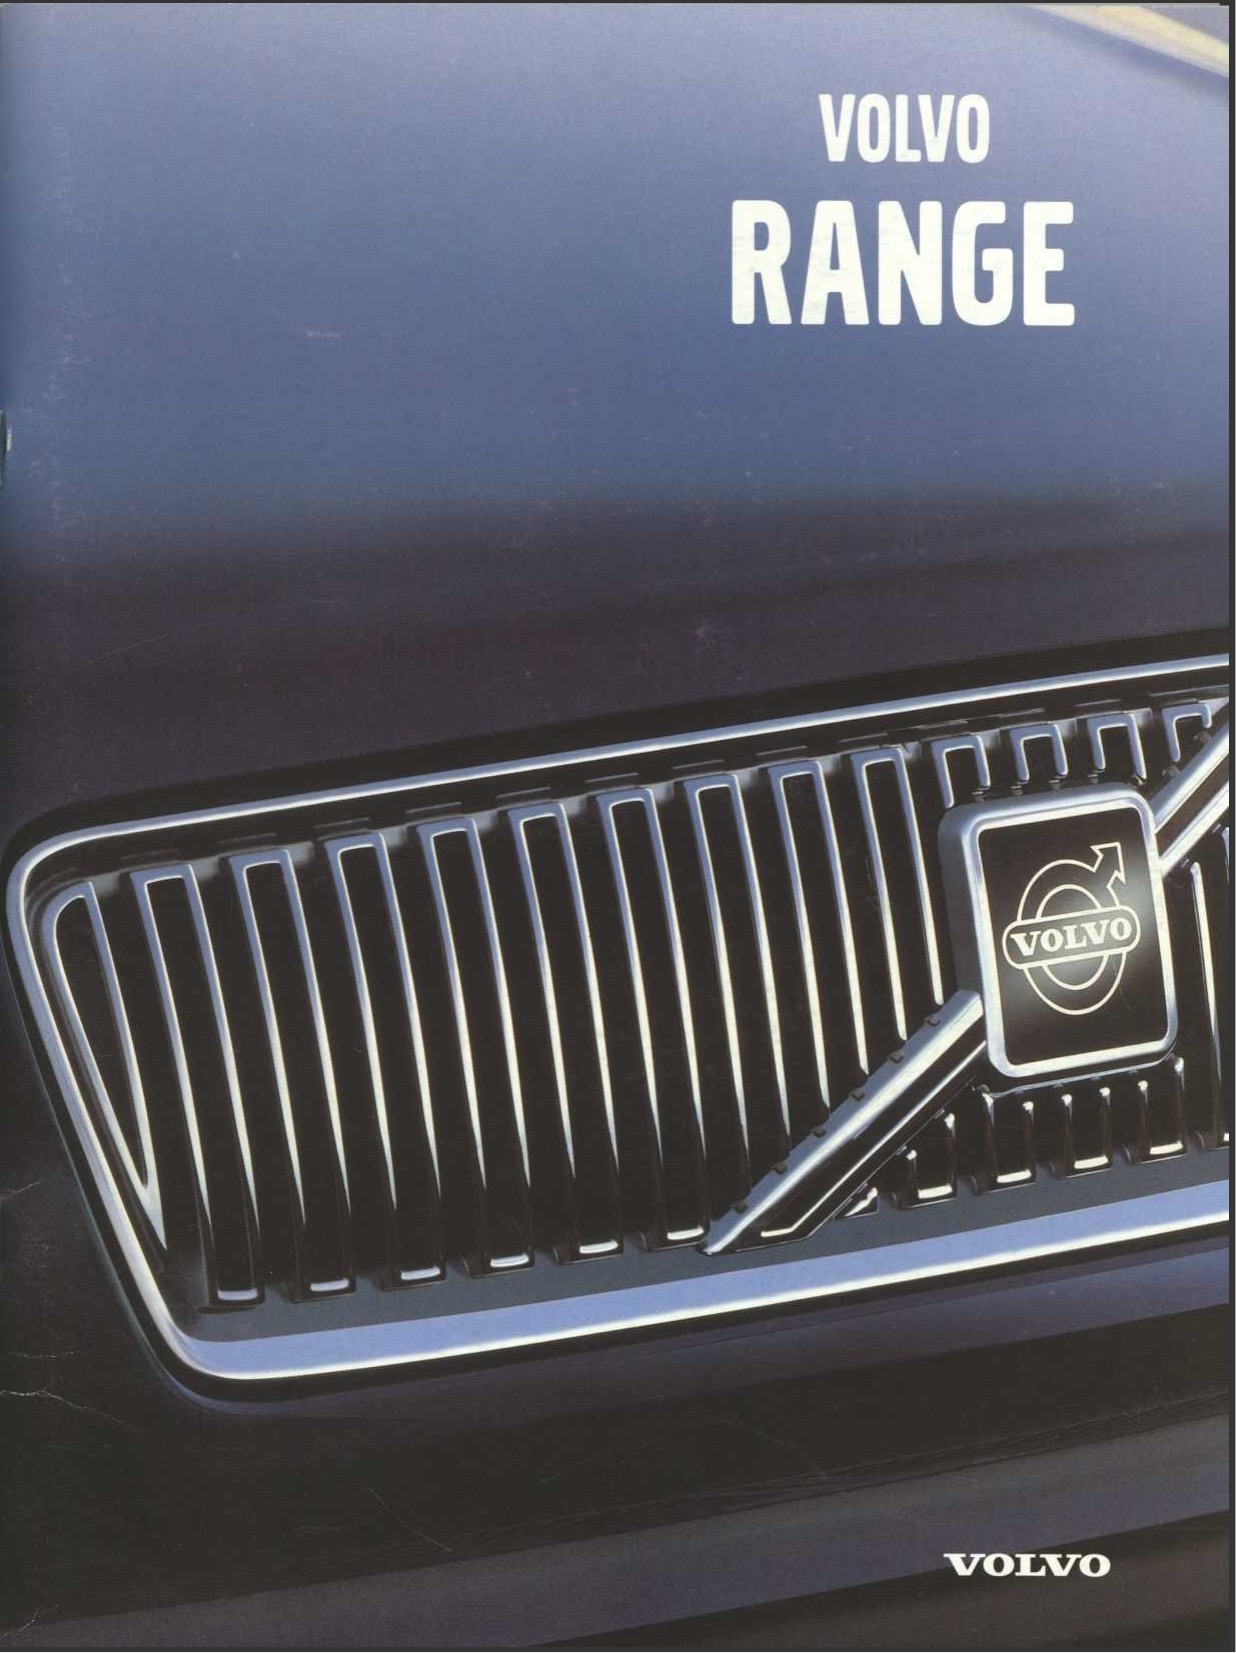 1998 Volvo Full-Line